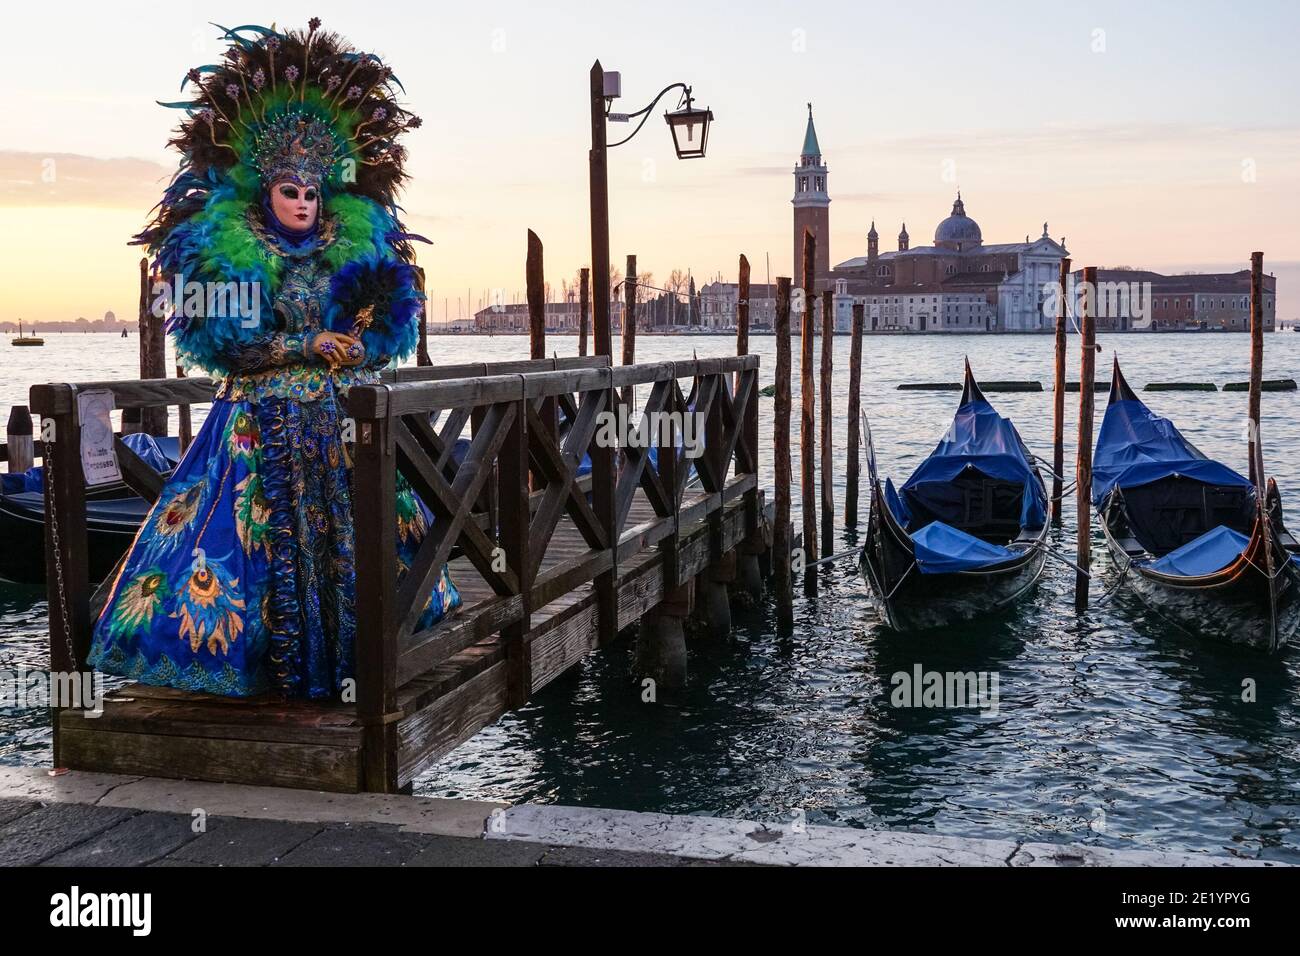 Frau in traditionell dekoriertem Kostüm und bemalter Maske während des Karnevals in Venedig mit dem Kloster San Giorgio dahinter, Venedig, Italien Stockfoto